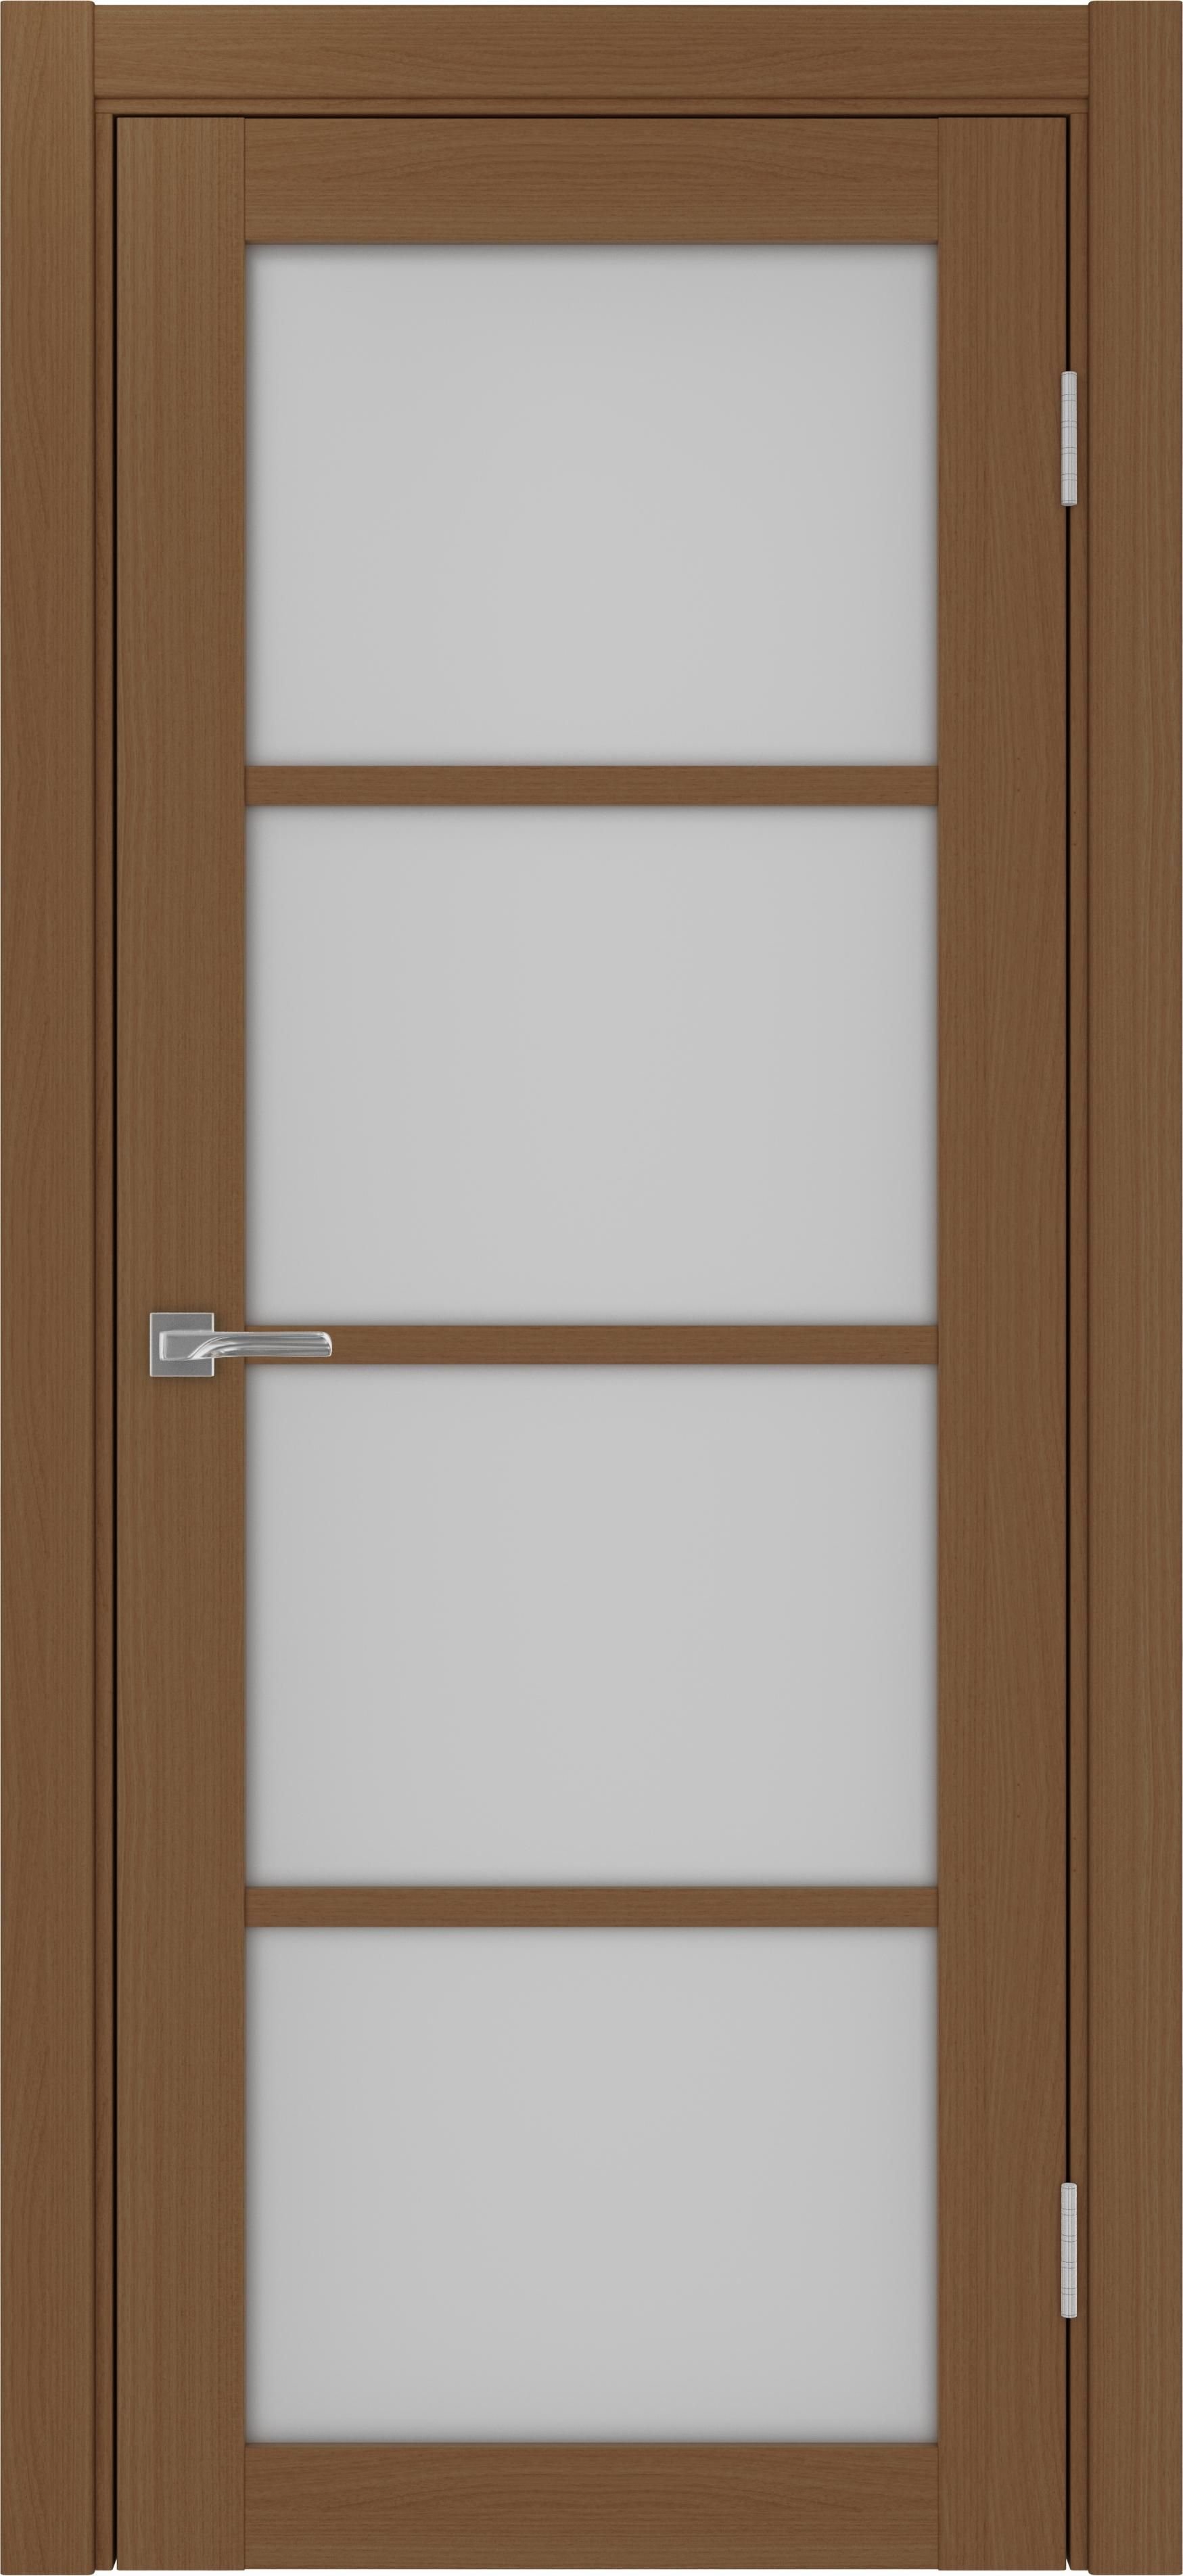 Межкомнатная дверь «Турин 540.2222 Орех» стекло сатин